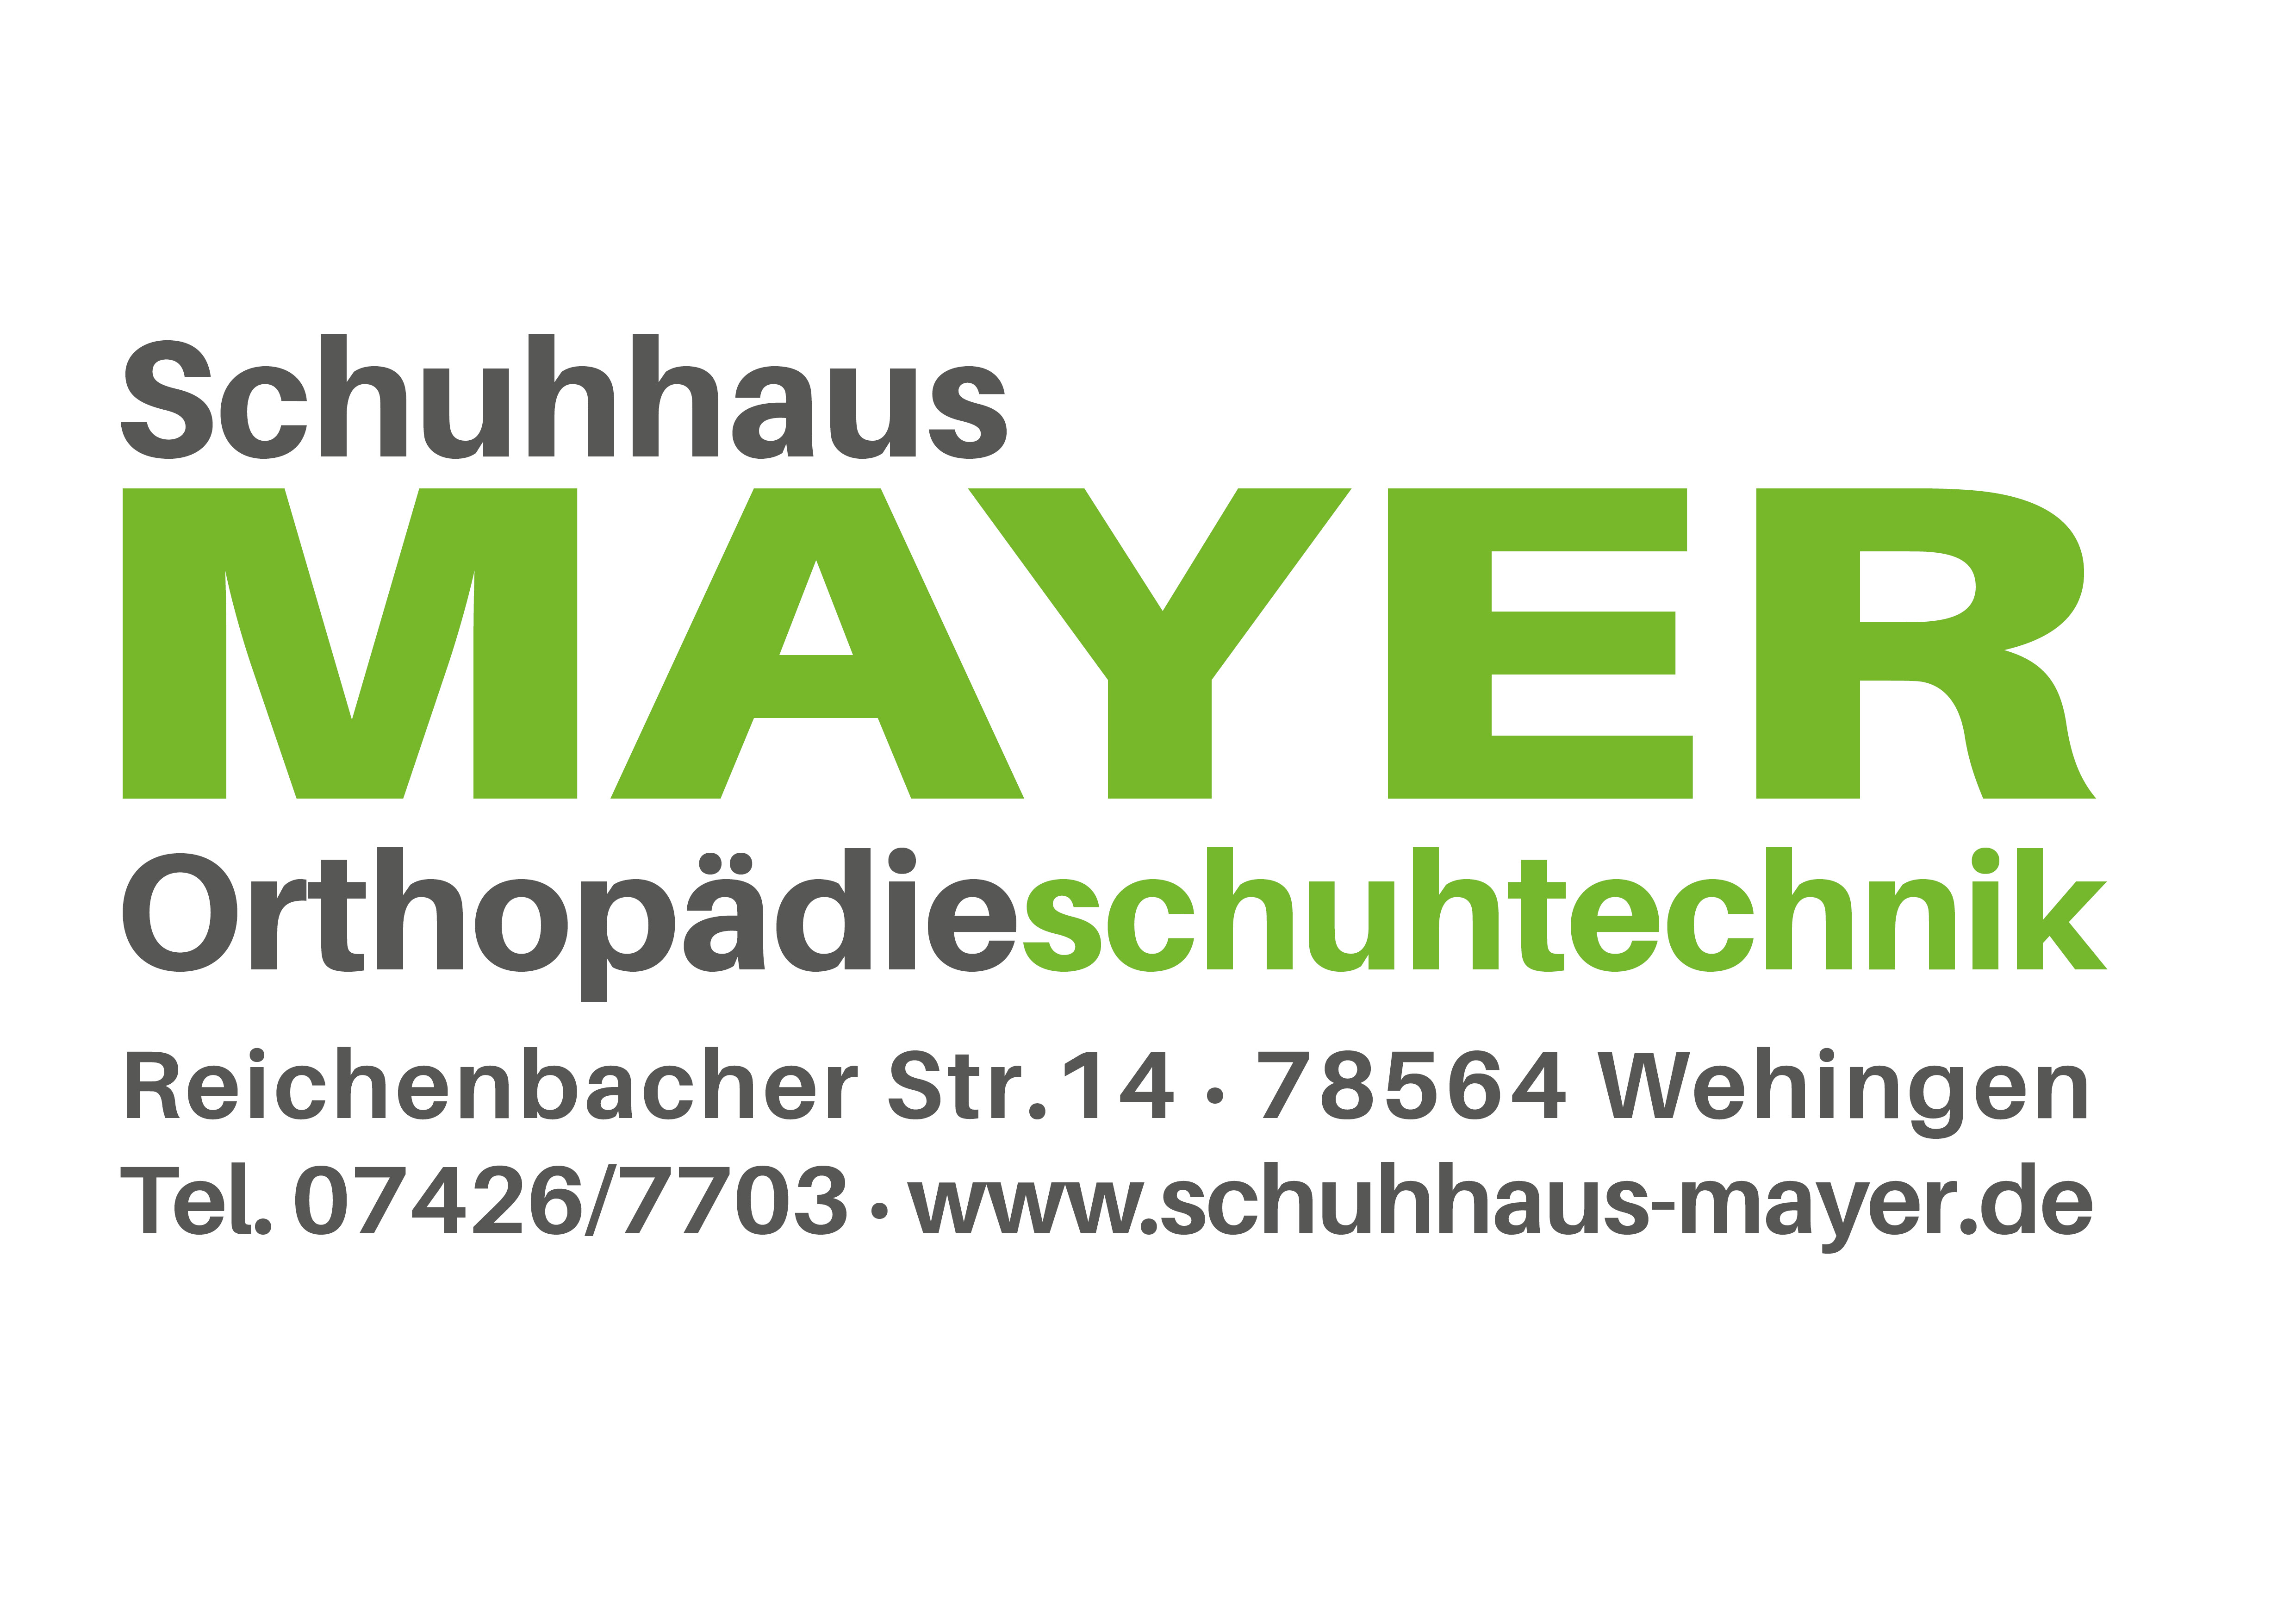 Mayer Schuhhaus Orthopädie-Schuhtechnik